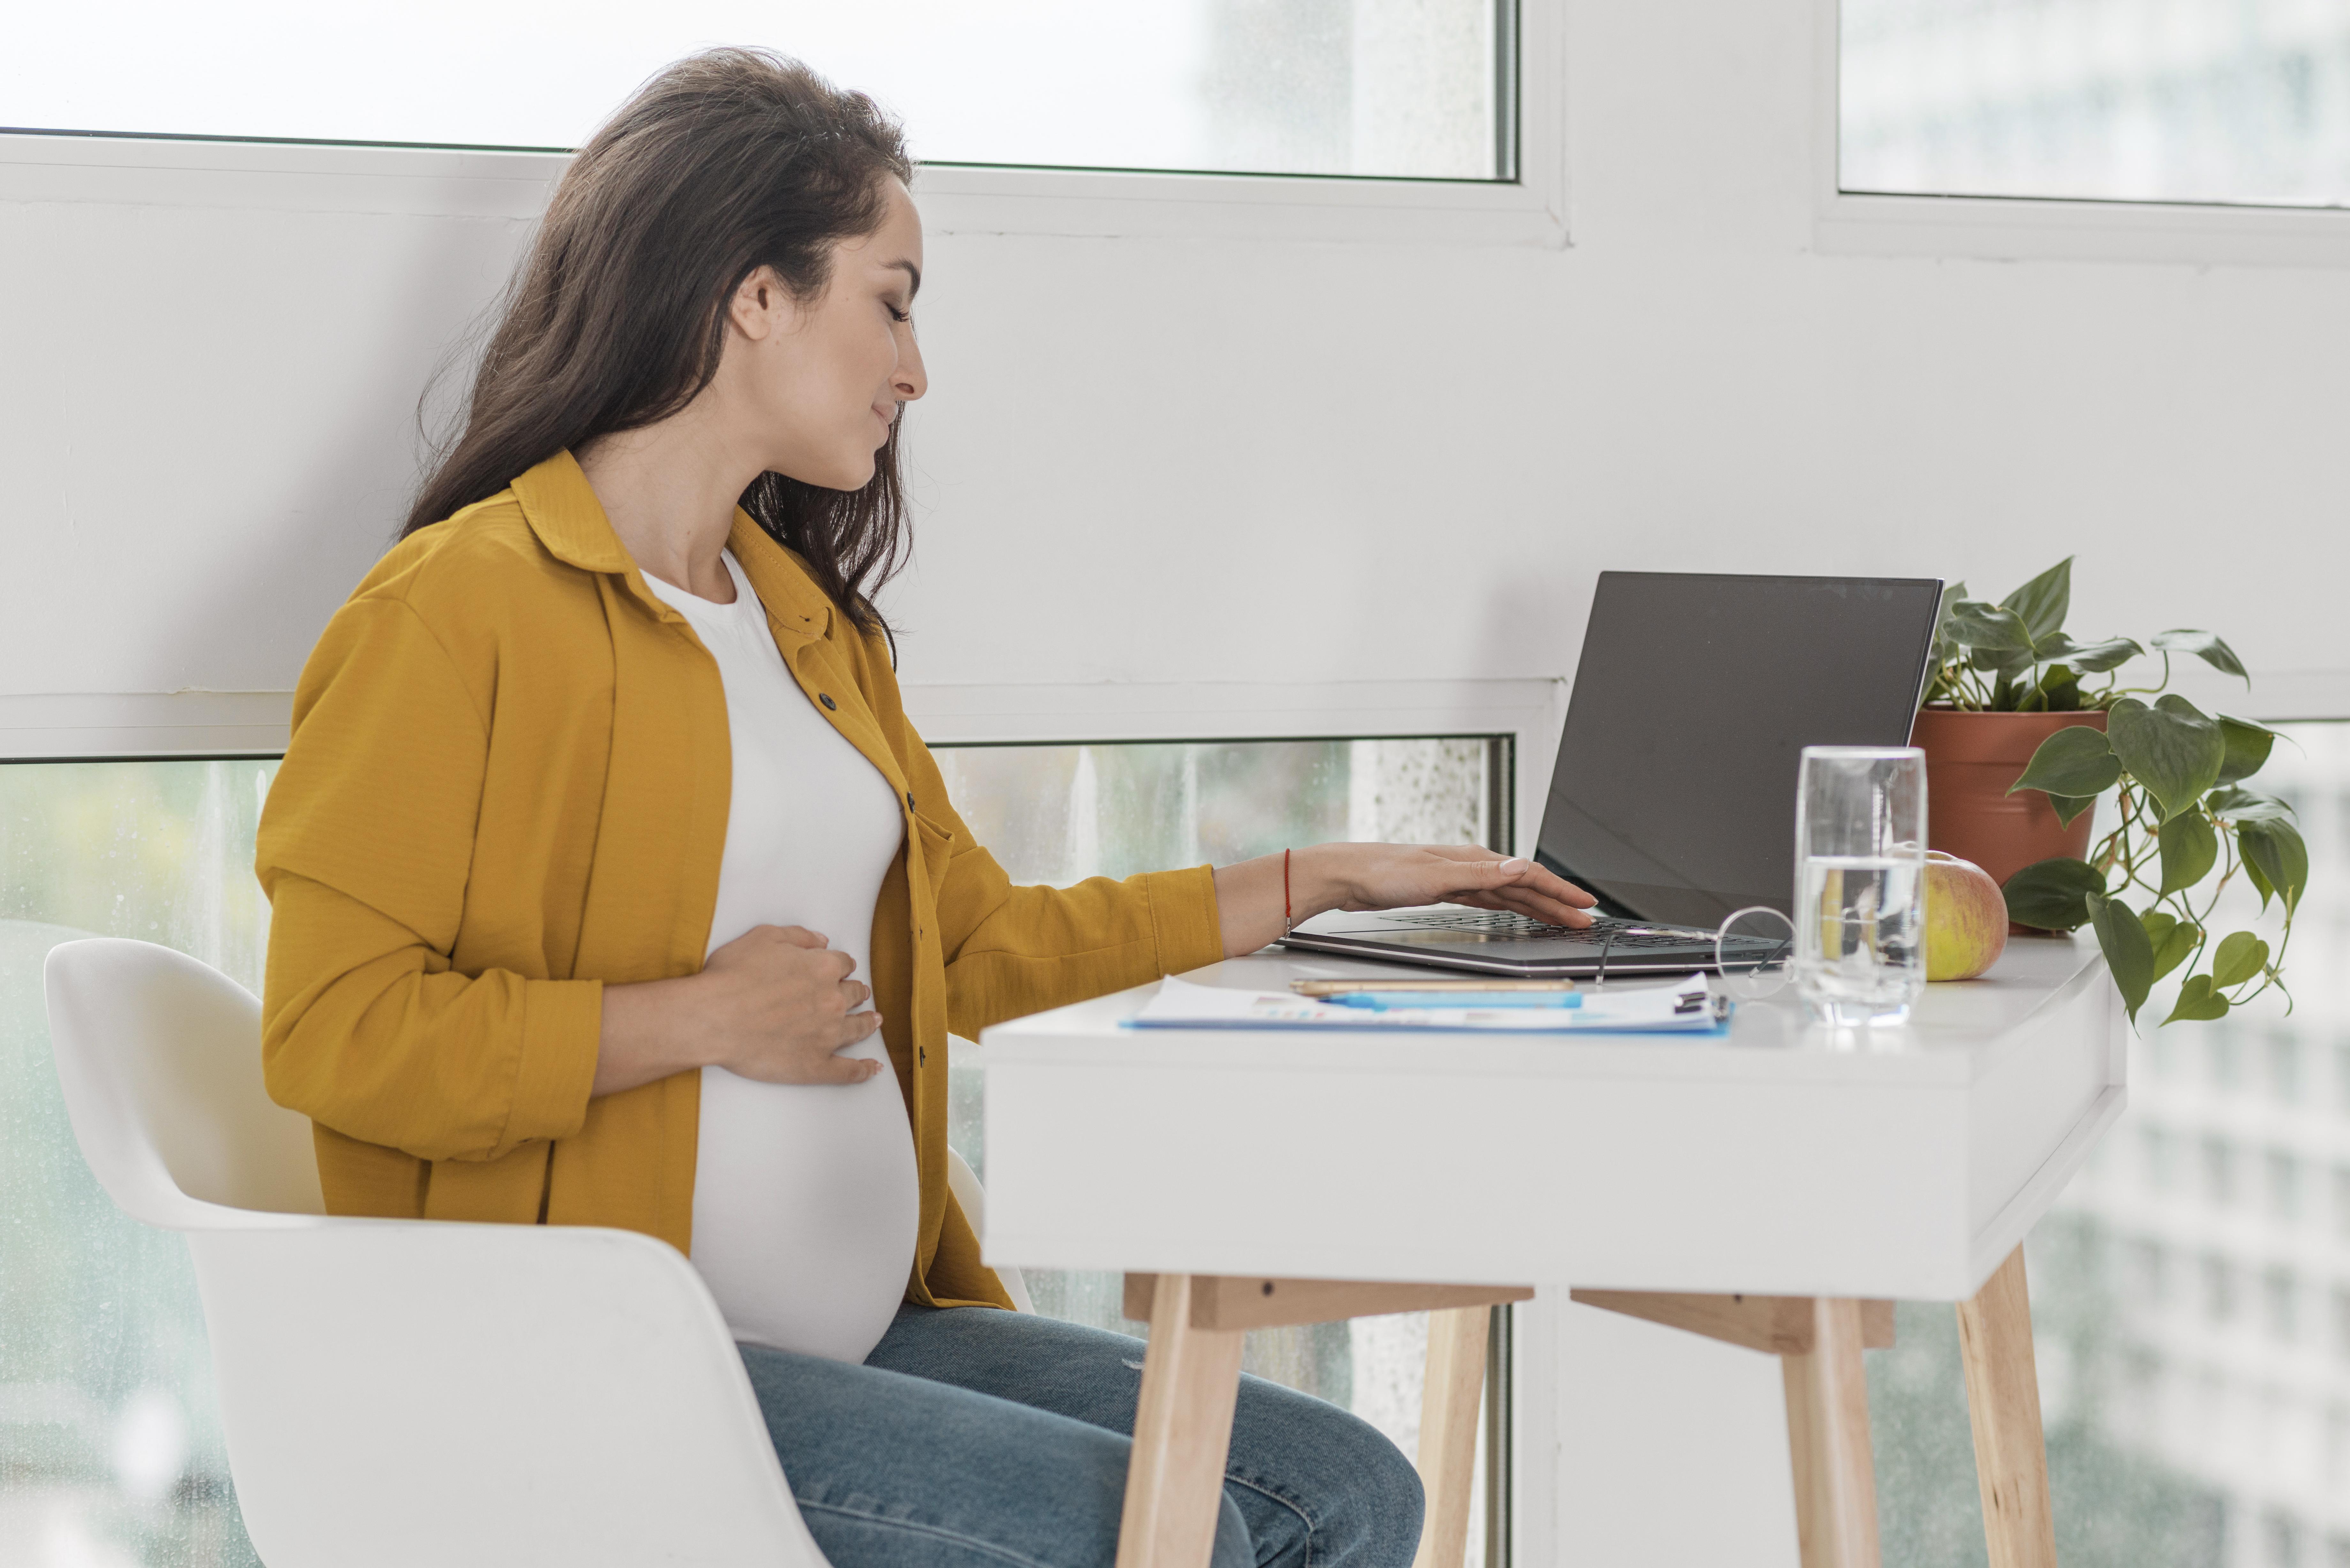 Durante el embarazo y la lactancia, las trabajadoras pueden enfrentar riesgos específicos en el lugar de trabajo que pueden afectar su salud y la de su bebé.